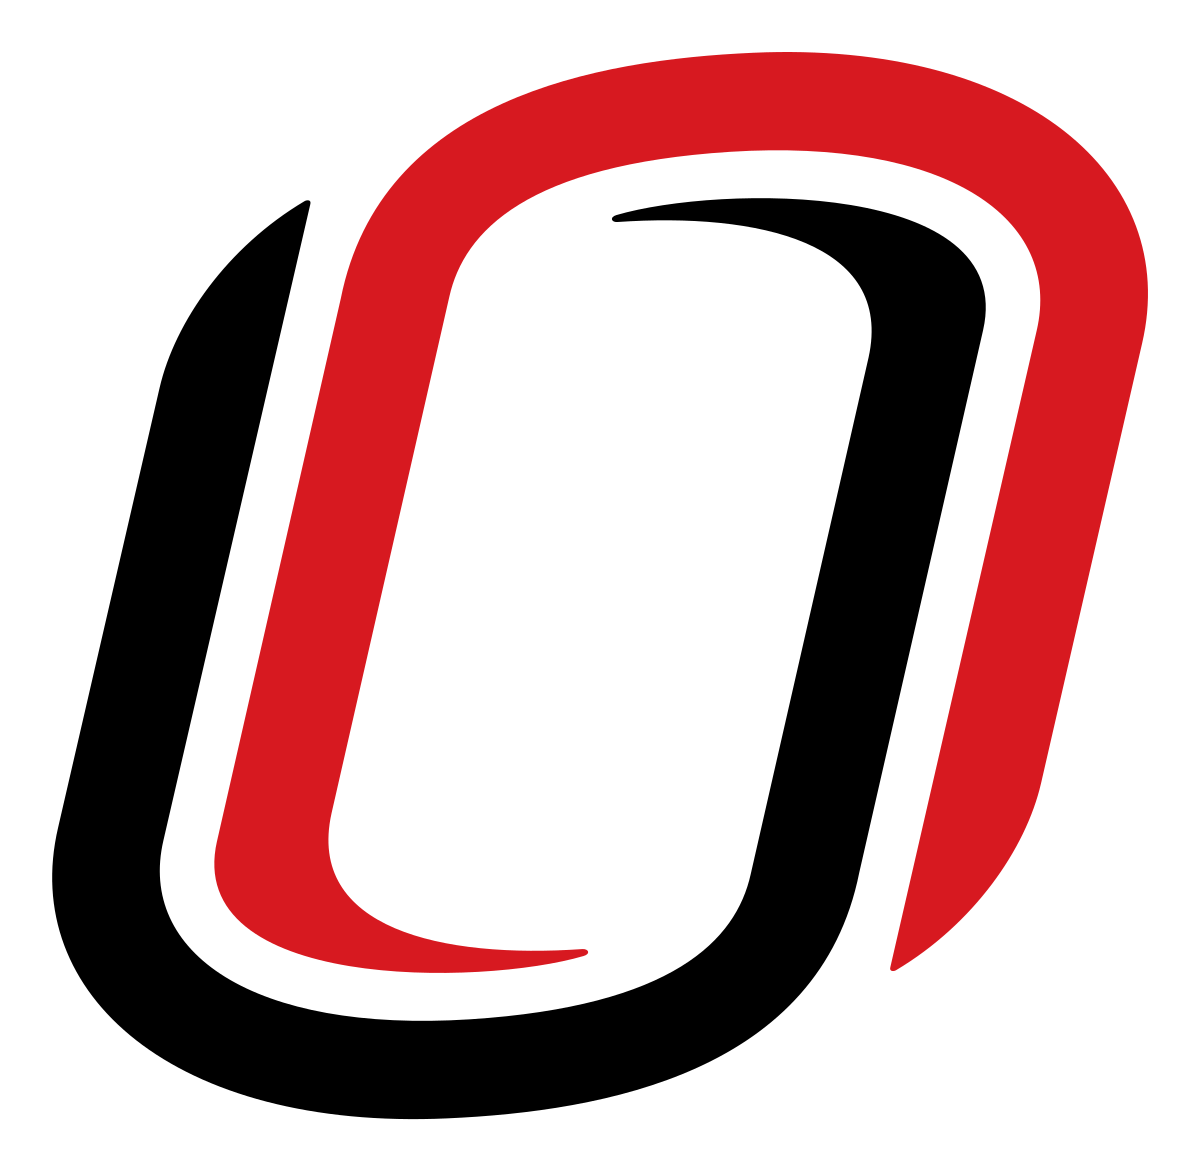 Uno Logo - Omaha Mavericks men's ice hockey